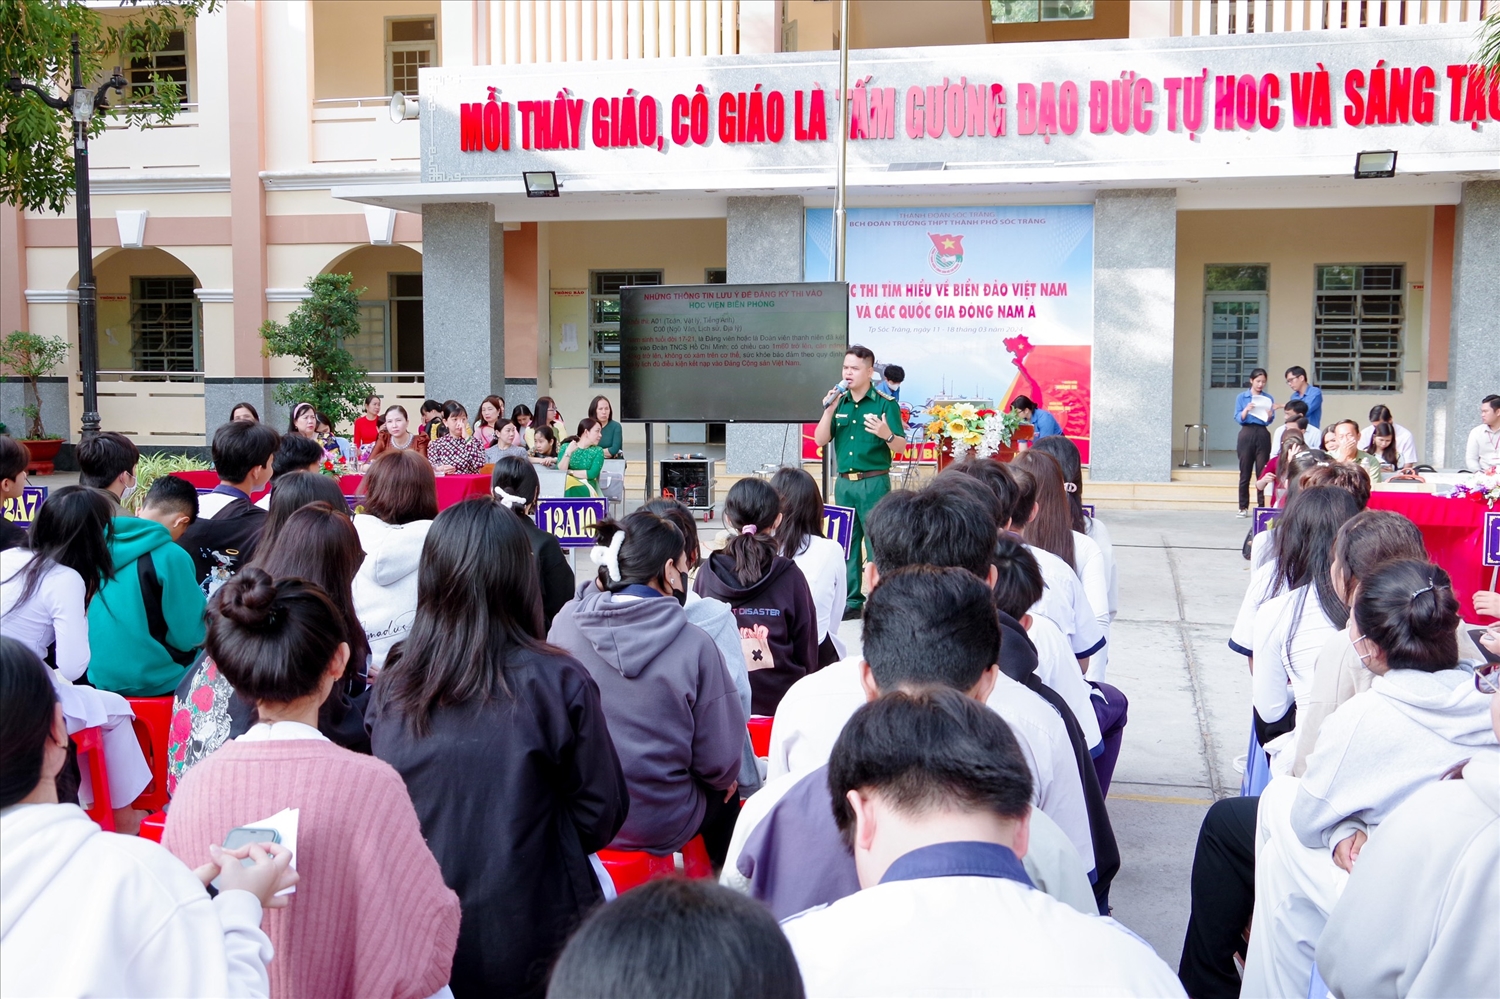 Bộ đội Biên phòng tỉnh Sóc Trăng tuyên truyền Luật Biên phòng Việt Nam và chủ quyền biển, đảo cho các em học sinh